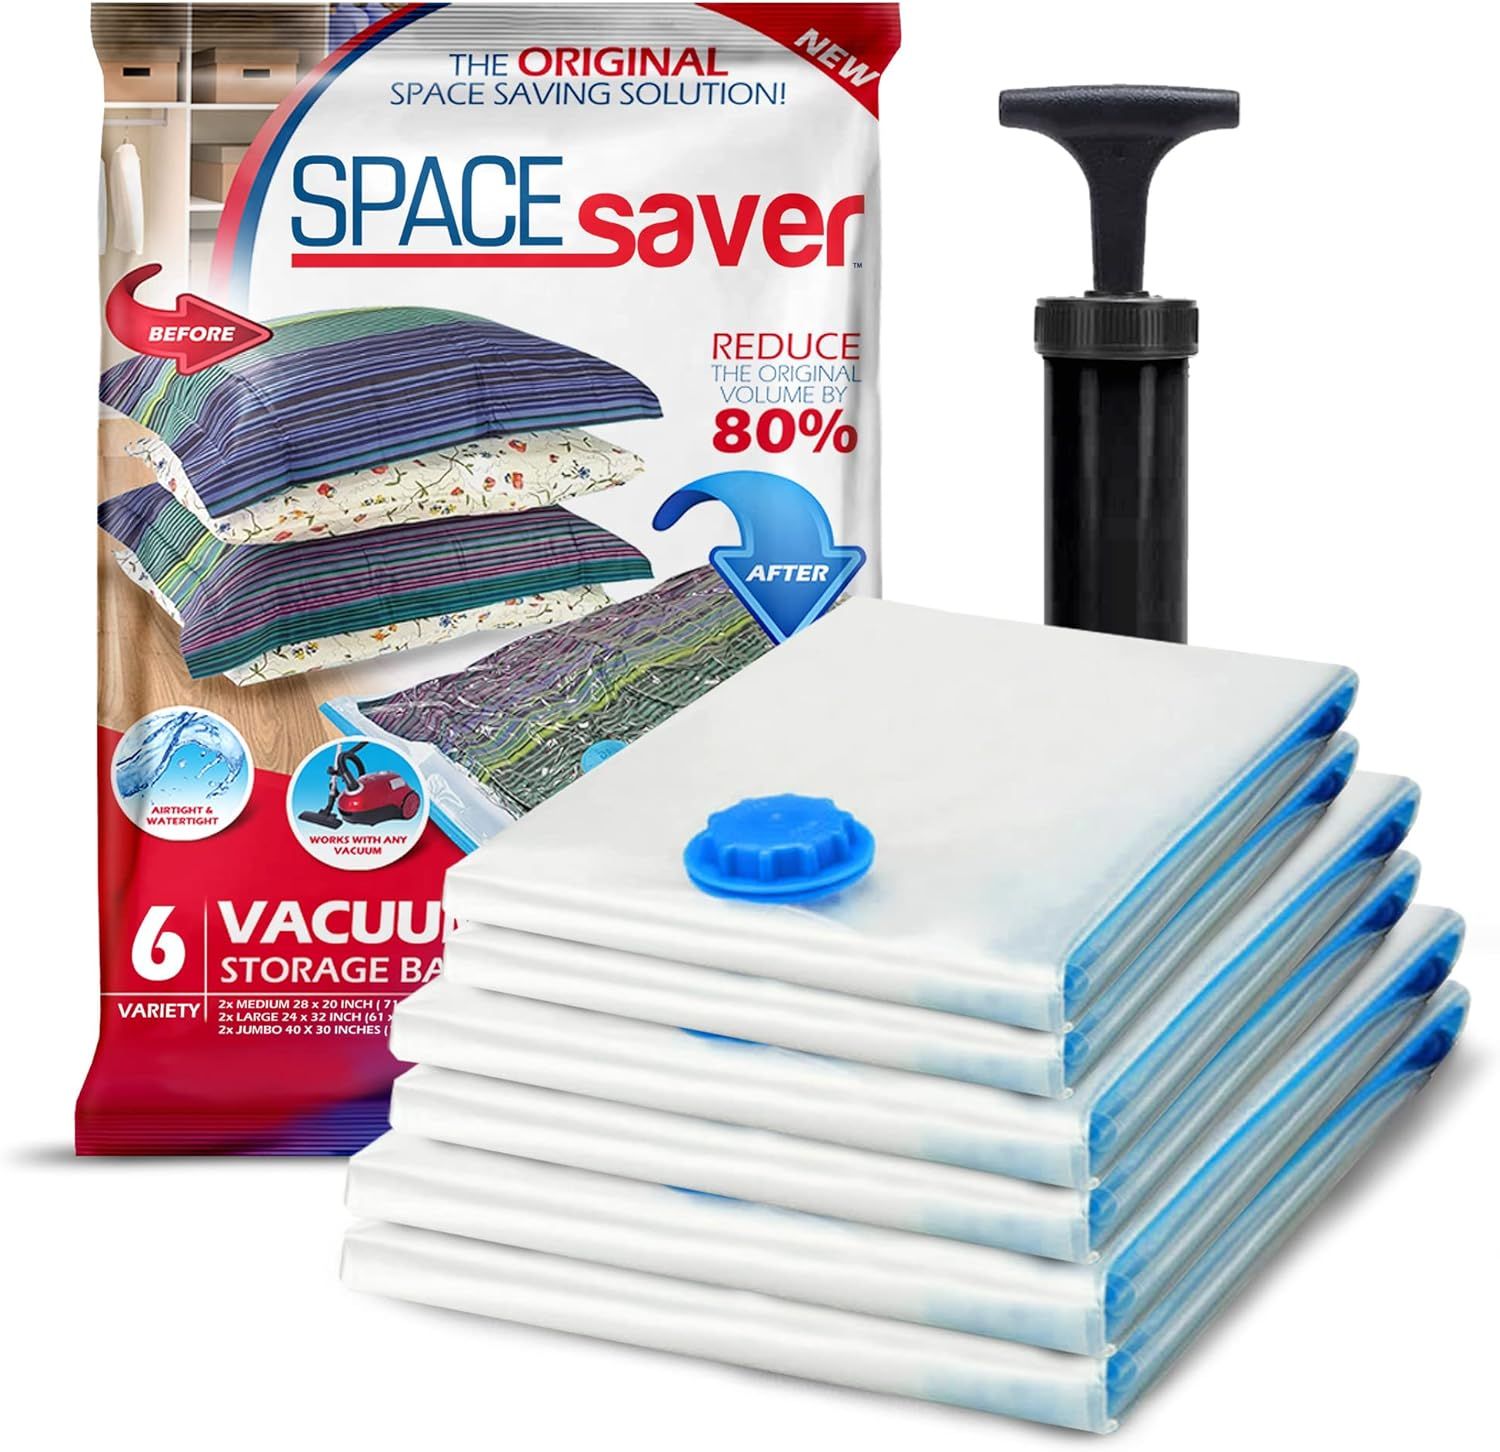 Spacesaver Space Bags Vacuum Storage Bags Save 80% on Storage Space, Variety 6 Pack - Vacuum Seal... | Amazon (US)